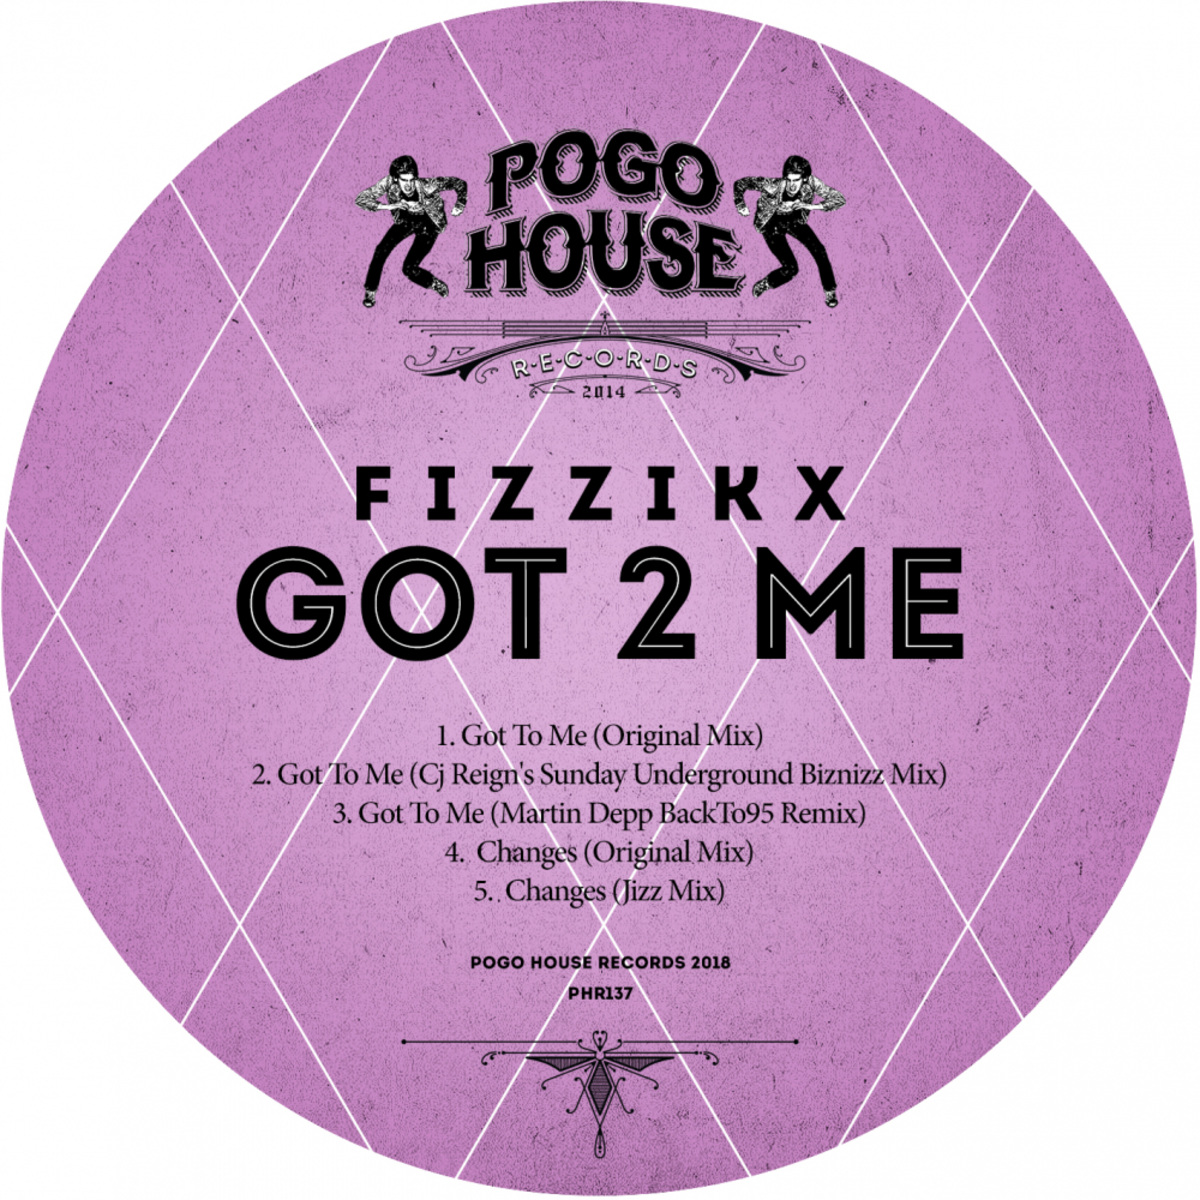 Fizzikx - Got 2 Me / Pogo House Records